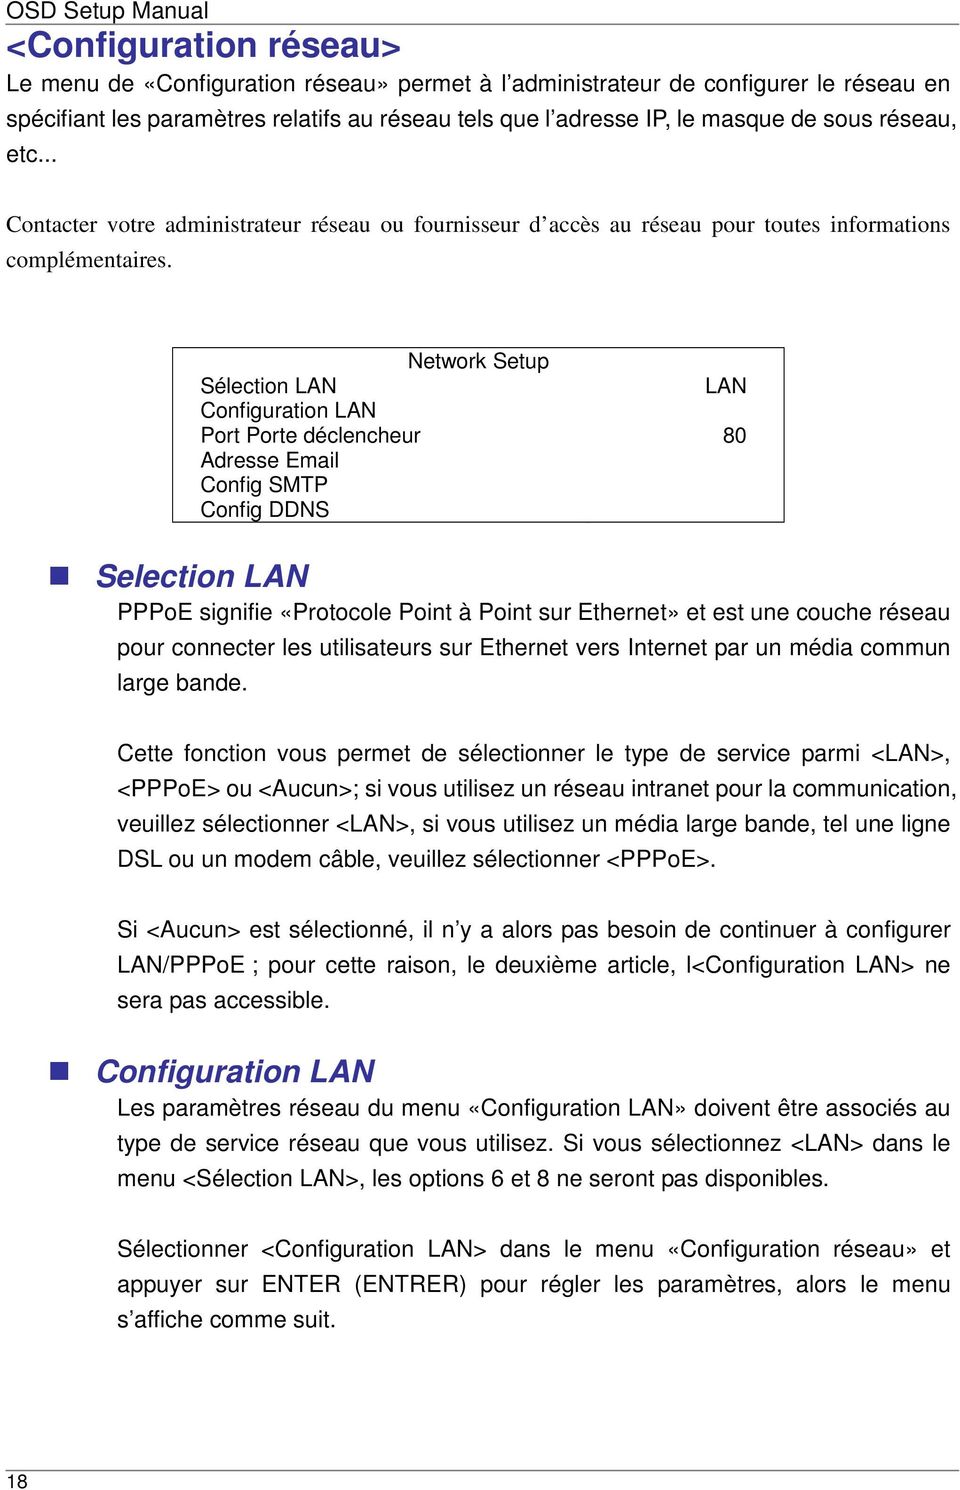 Network Setup Sélection LAN Configuration LAN Port Porte déclencheur Adresse Email Config SMTP Config DDNS LAN 80 Selection LAN PPPoE signifie «Protocole Point à Point sur Ethernet» et est une couche